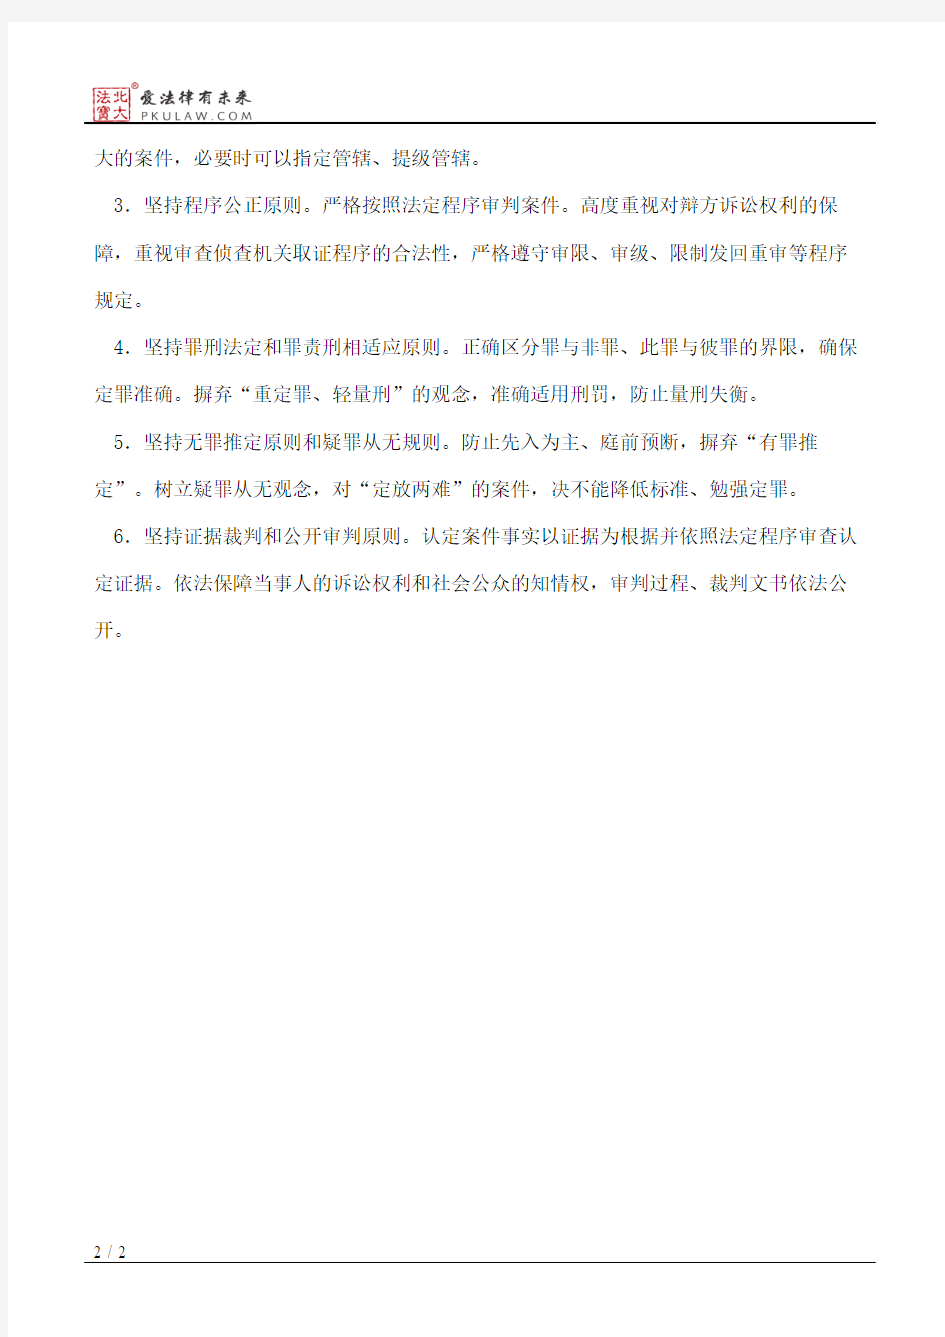 江苏省高级人民法院关于防范刑事冤假错案的贯彻落实意见